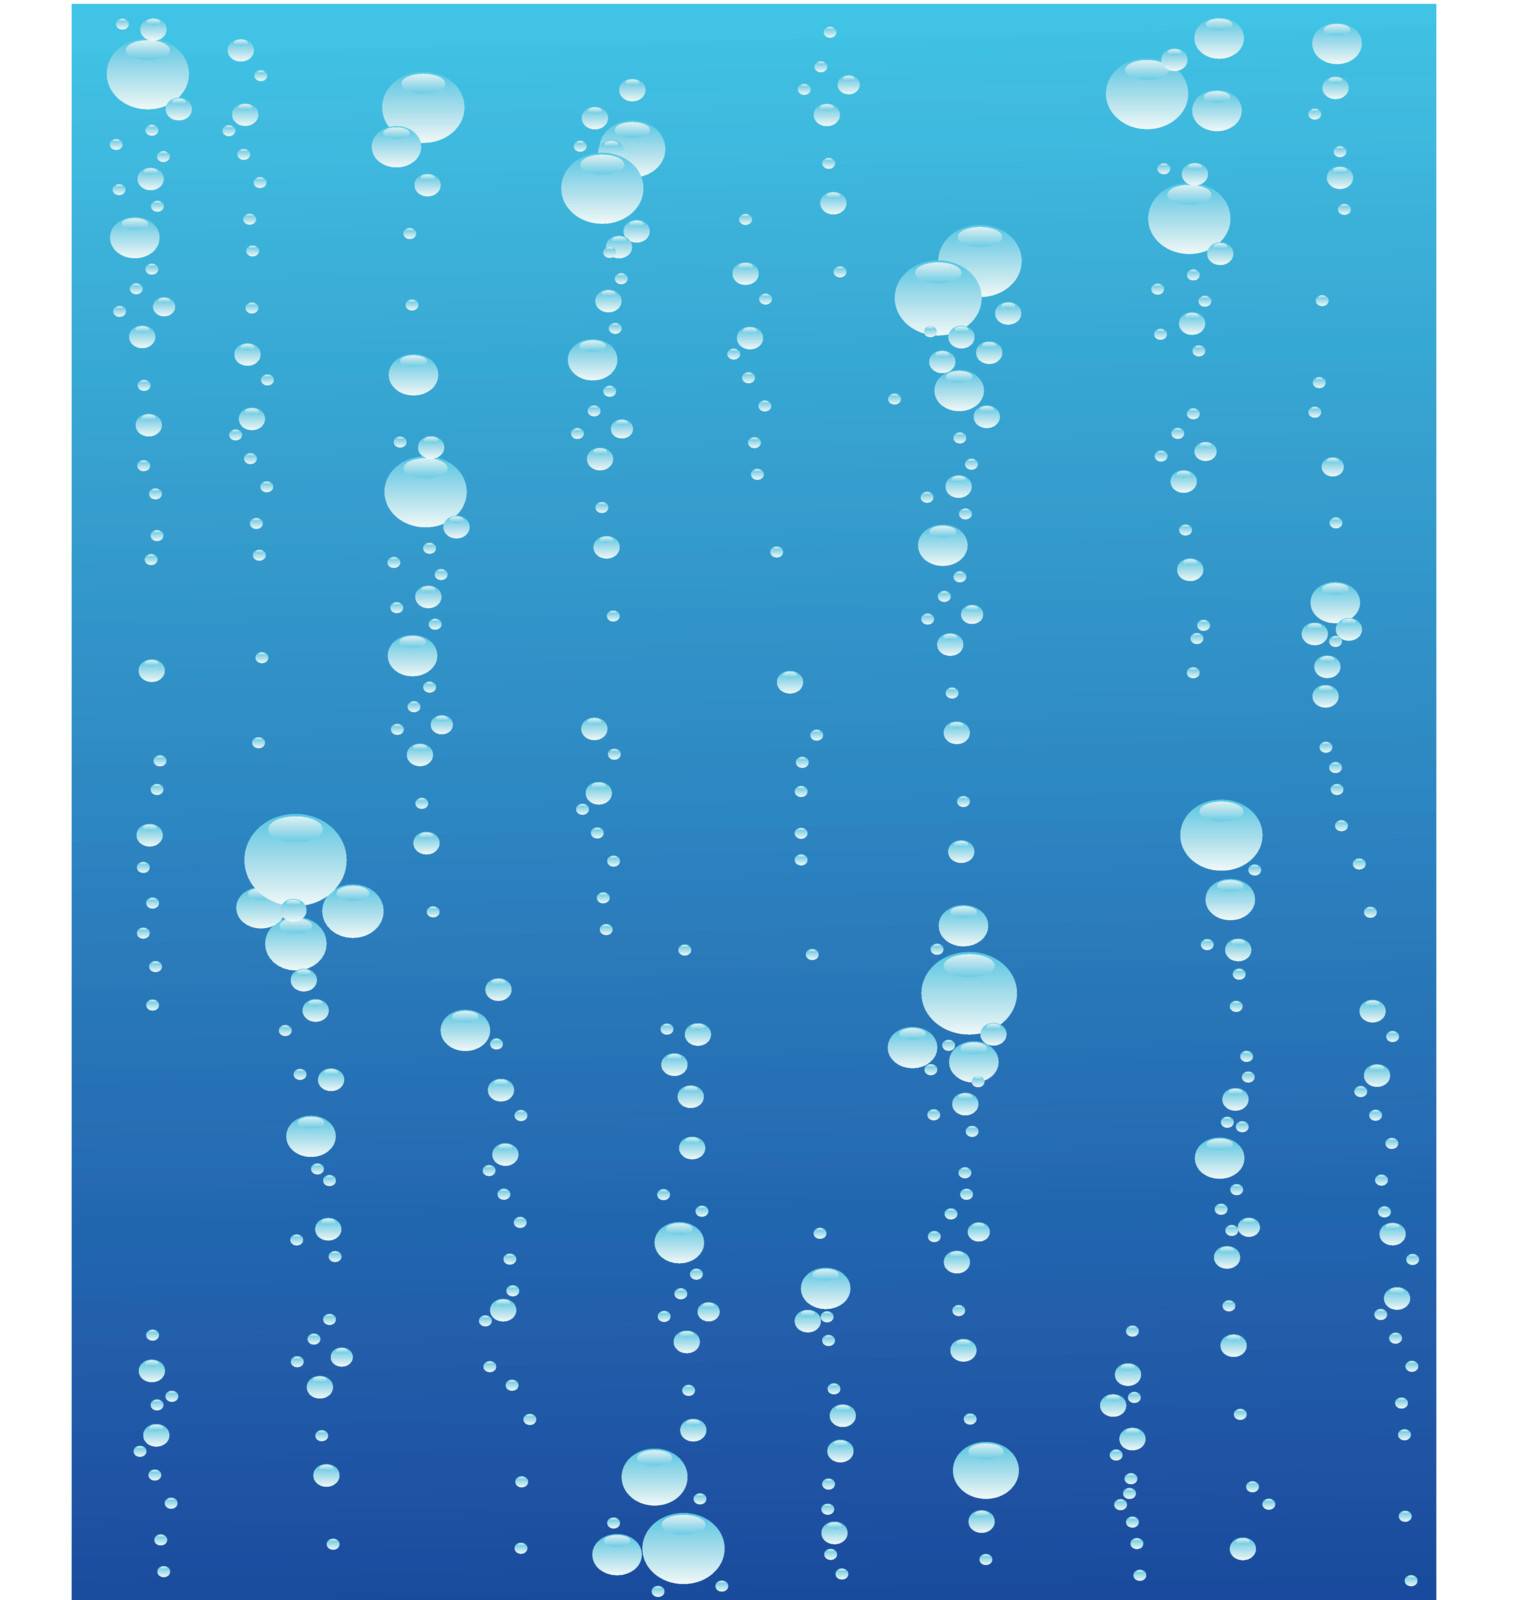 Water bubble by Matamu